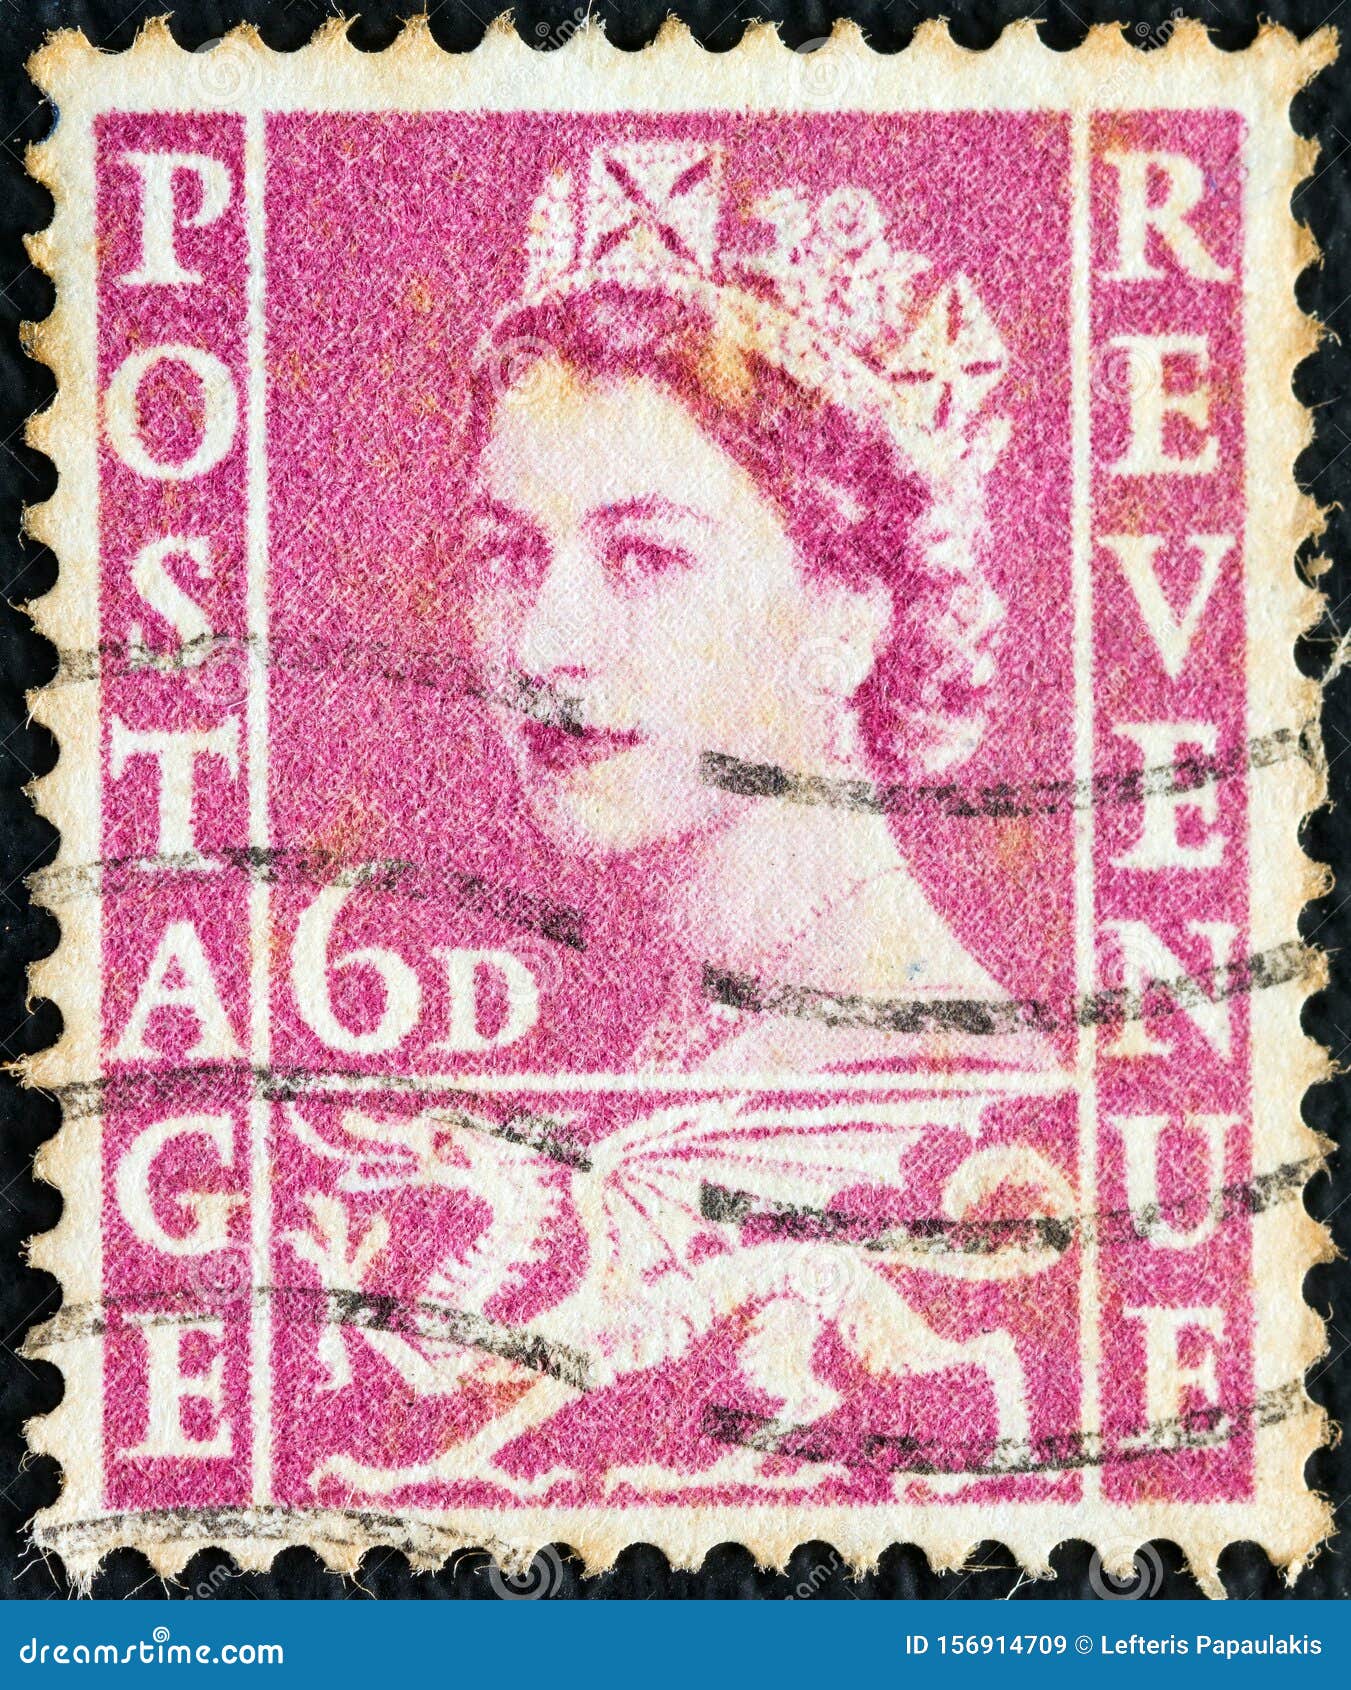 La reina elizabeth ii de inglaterra postal